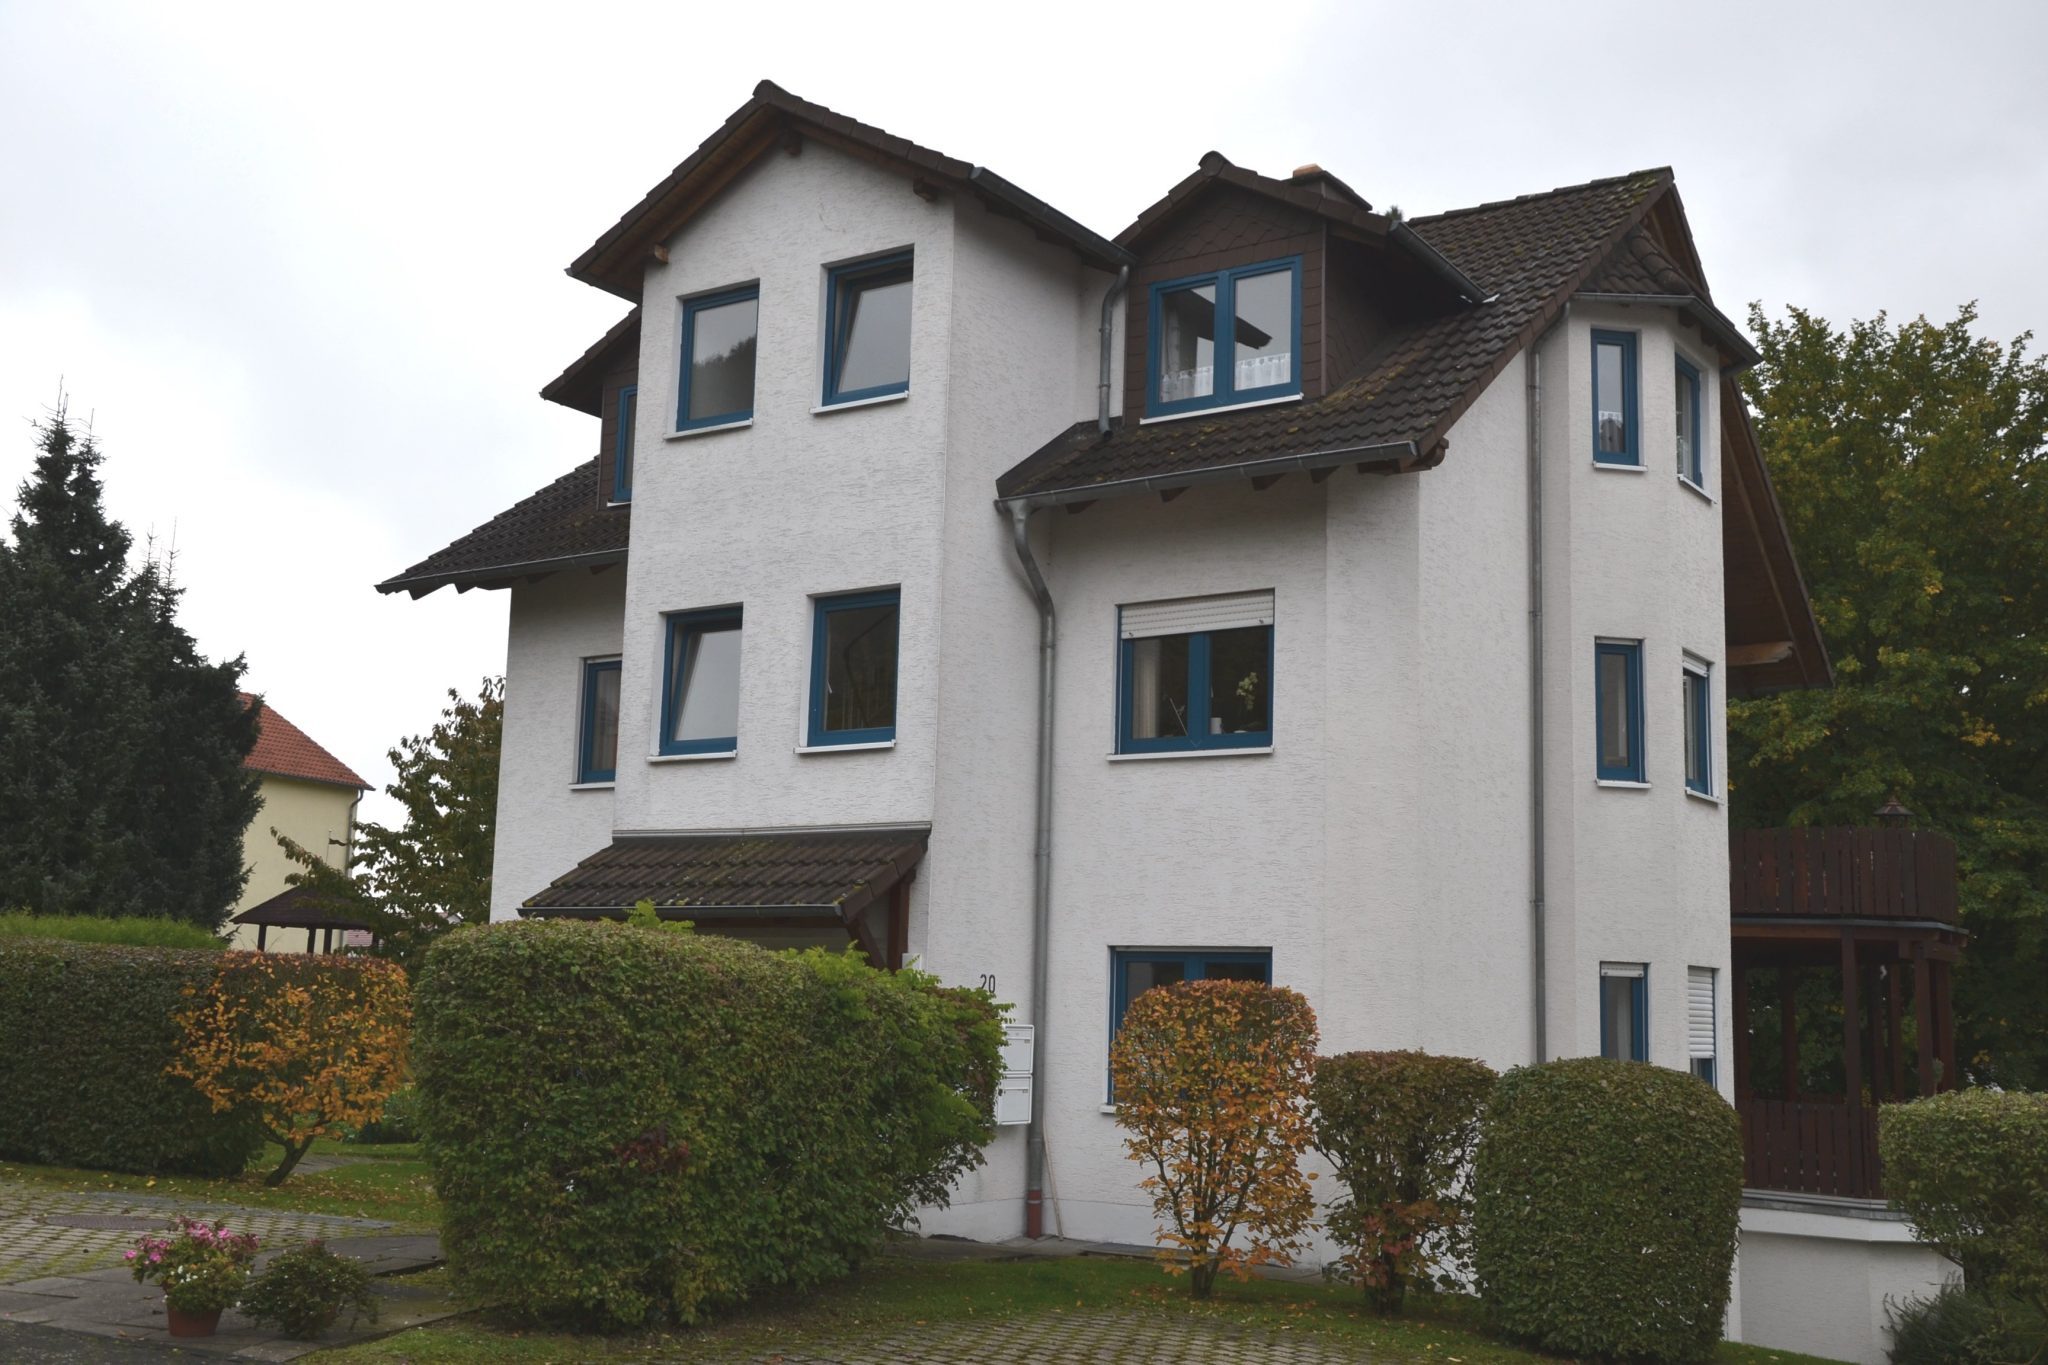 König Immobilien GmbH - Immobilienangebot - Baunatal - Mehrfamilienhaus - Mehrfamilienhaus mit 4 Wohneinheiten in top Lage von Baunatal